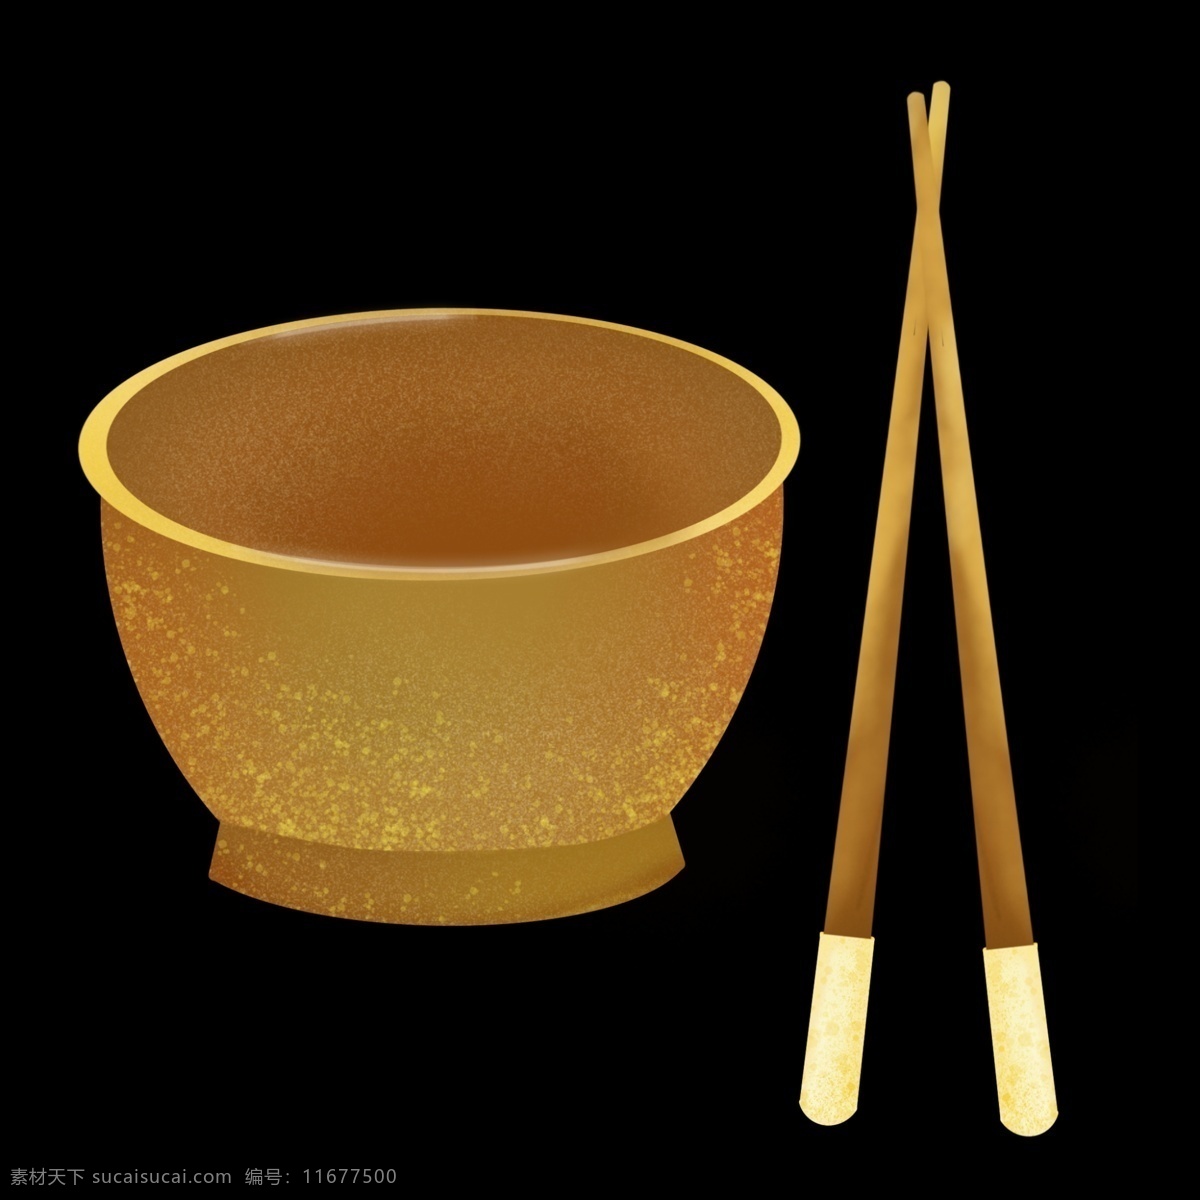 生活用品碗筷 碗具 筷子 餐具